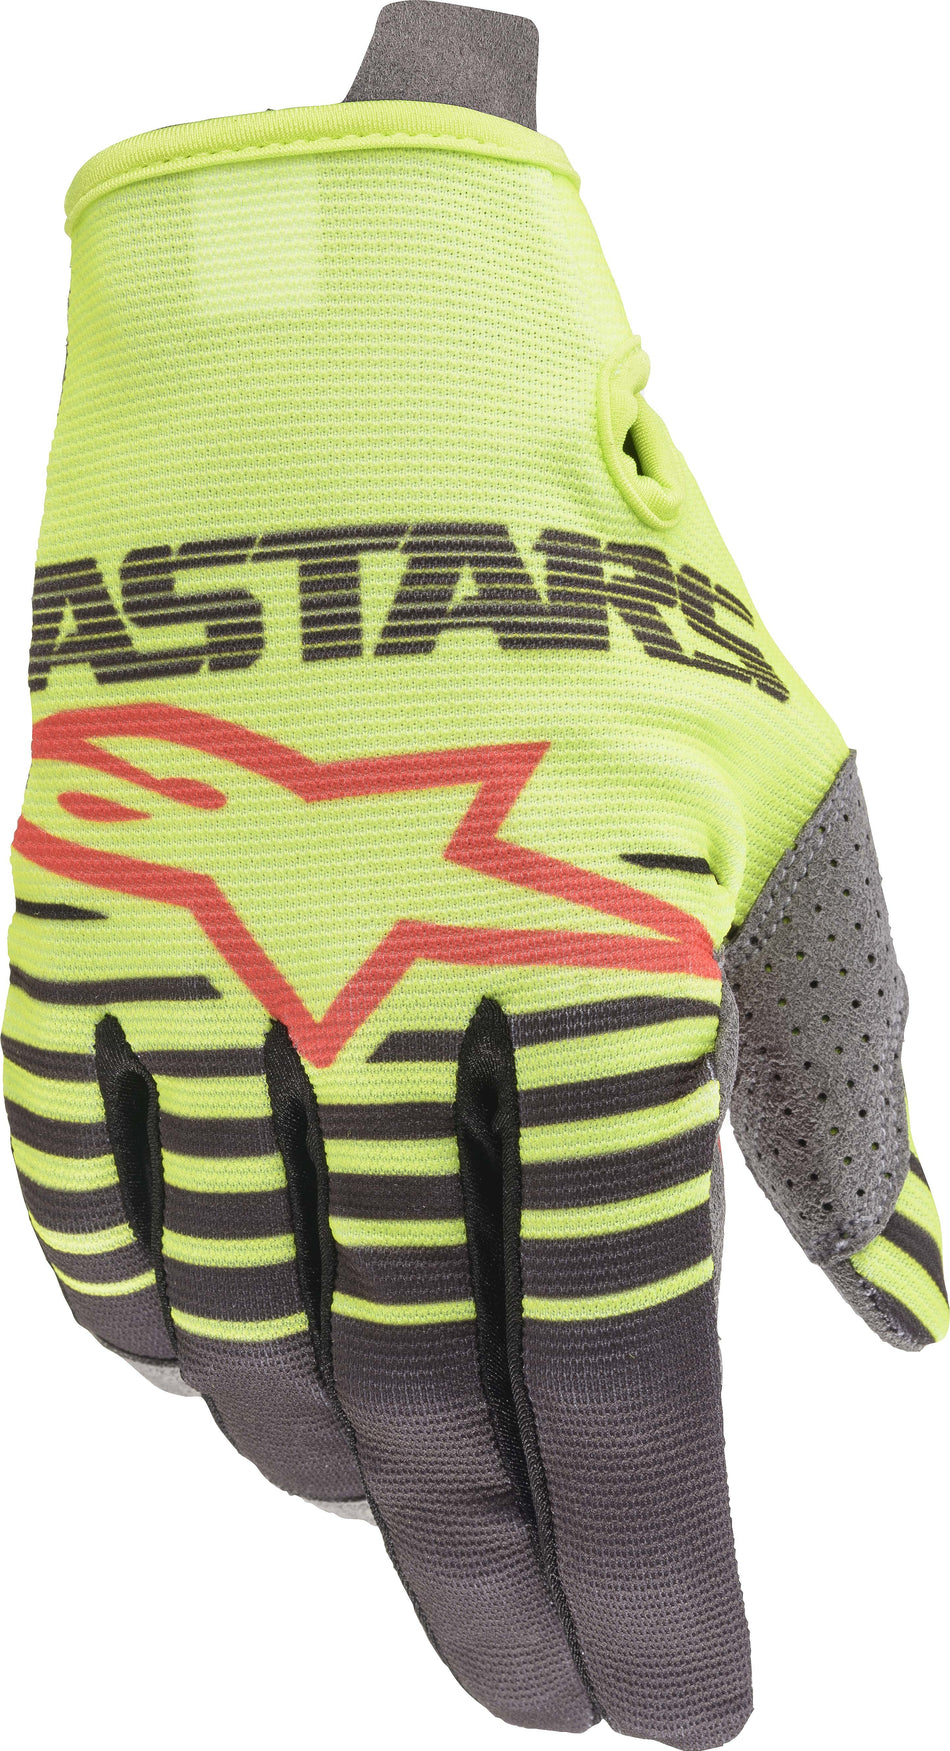 ALPINESTARS Radar Gloves Yellow/Anthracite Xl 3561820-559-XL